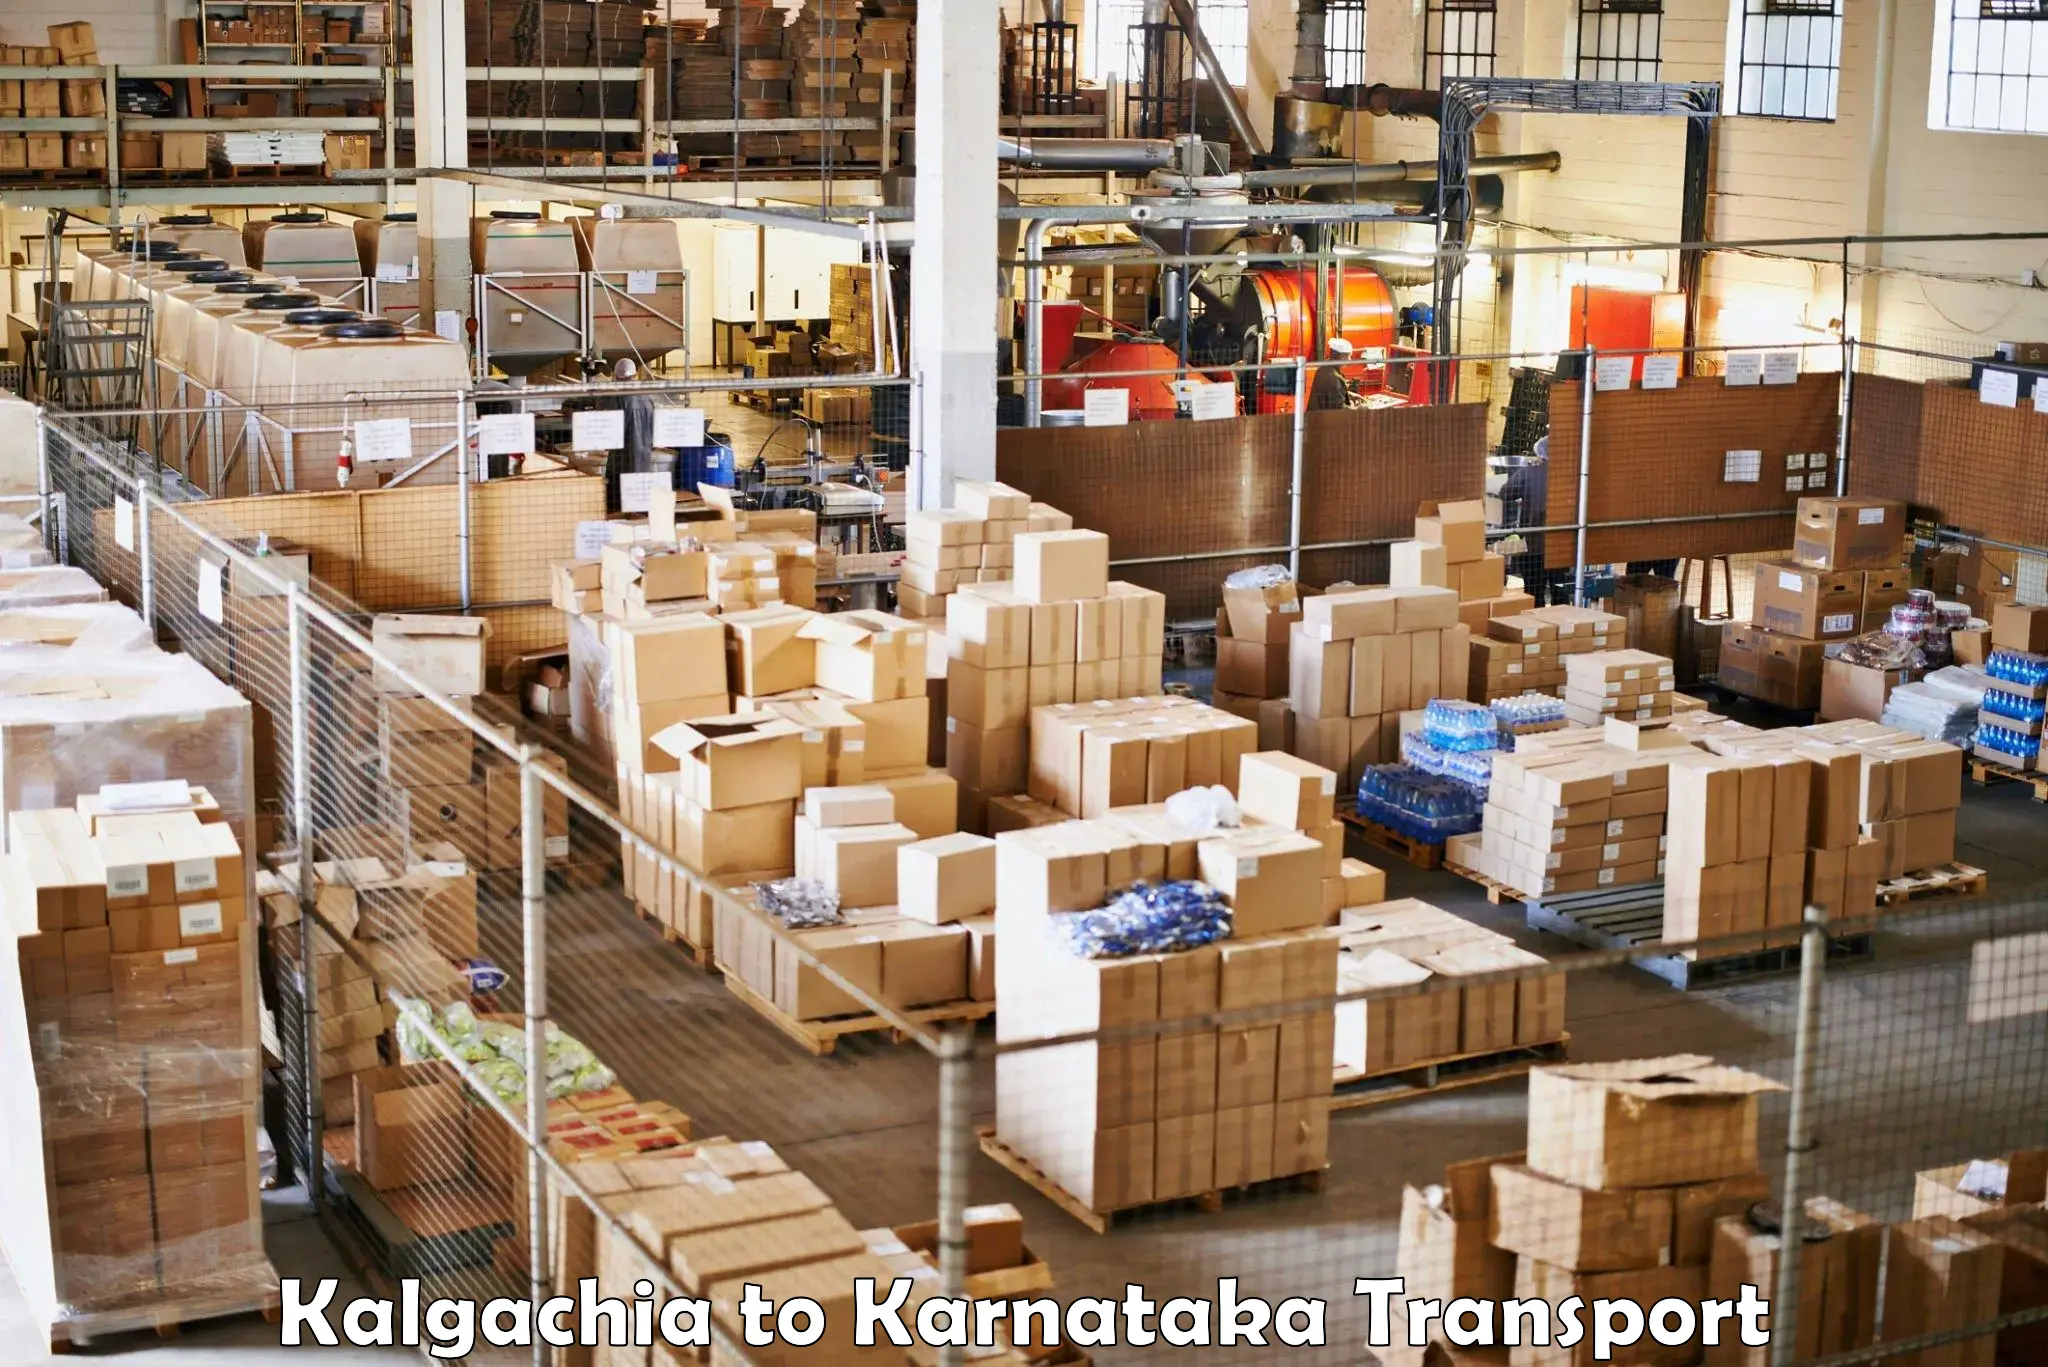 Nearby transport service Kalgachia to Krishnarajpete